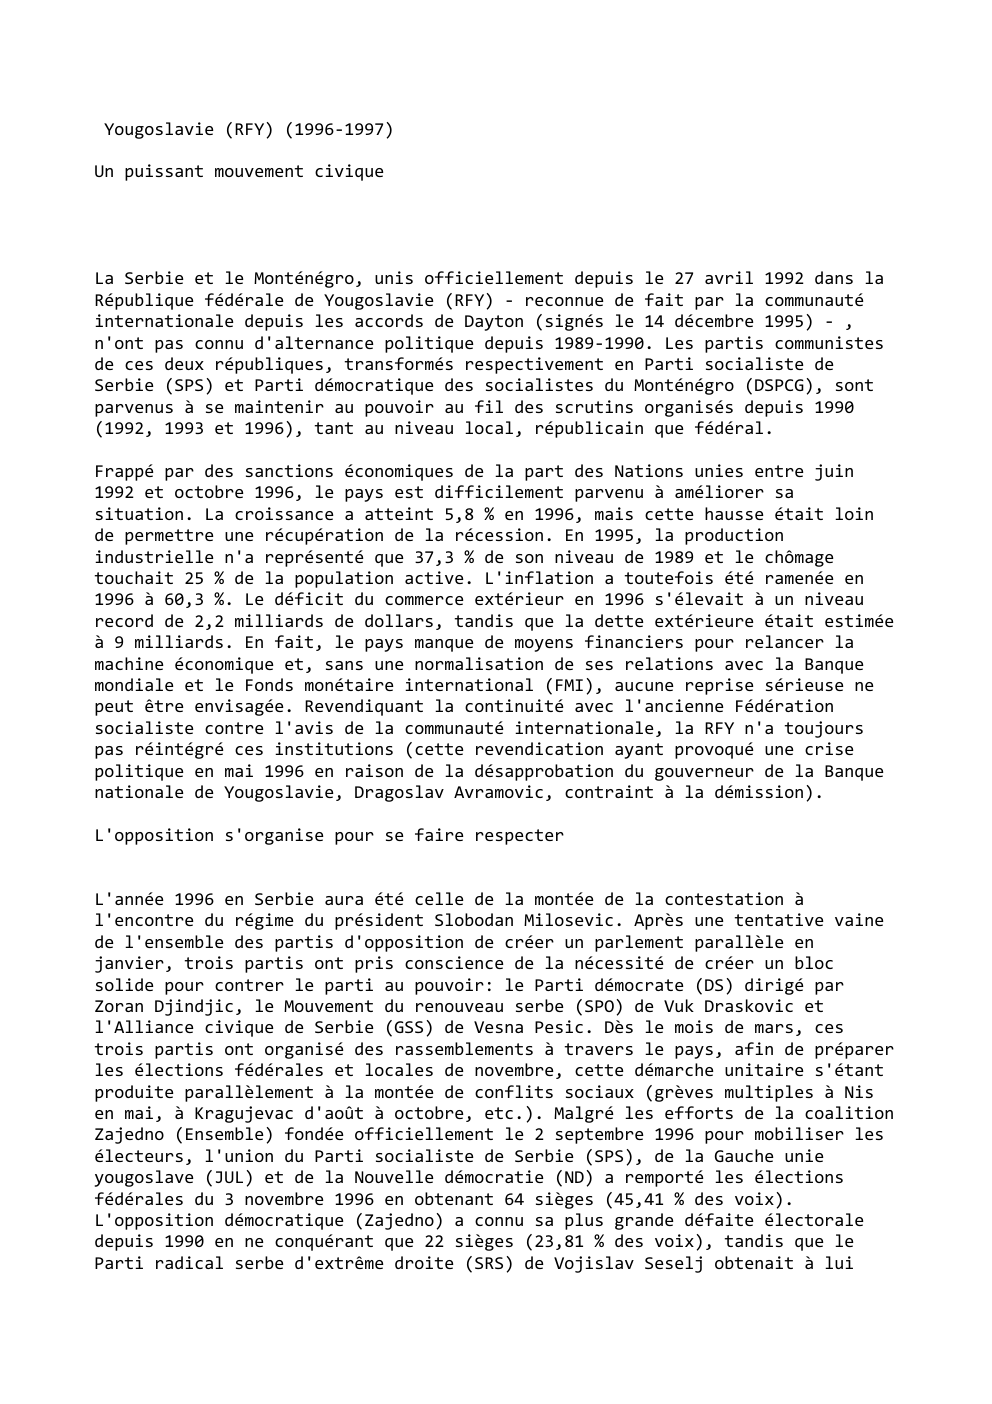 Prévisualisation du document Yougoslavie (RFY) (1996-1997)
Un puissant mouvement civique

La Serbie et le Monténégro, unis officiellement depuis le 27 avril 1992 dans...